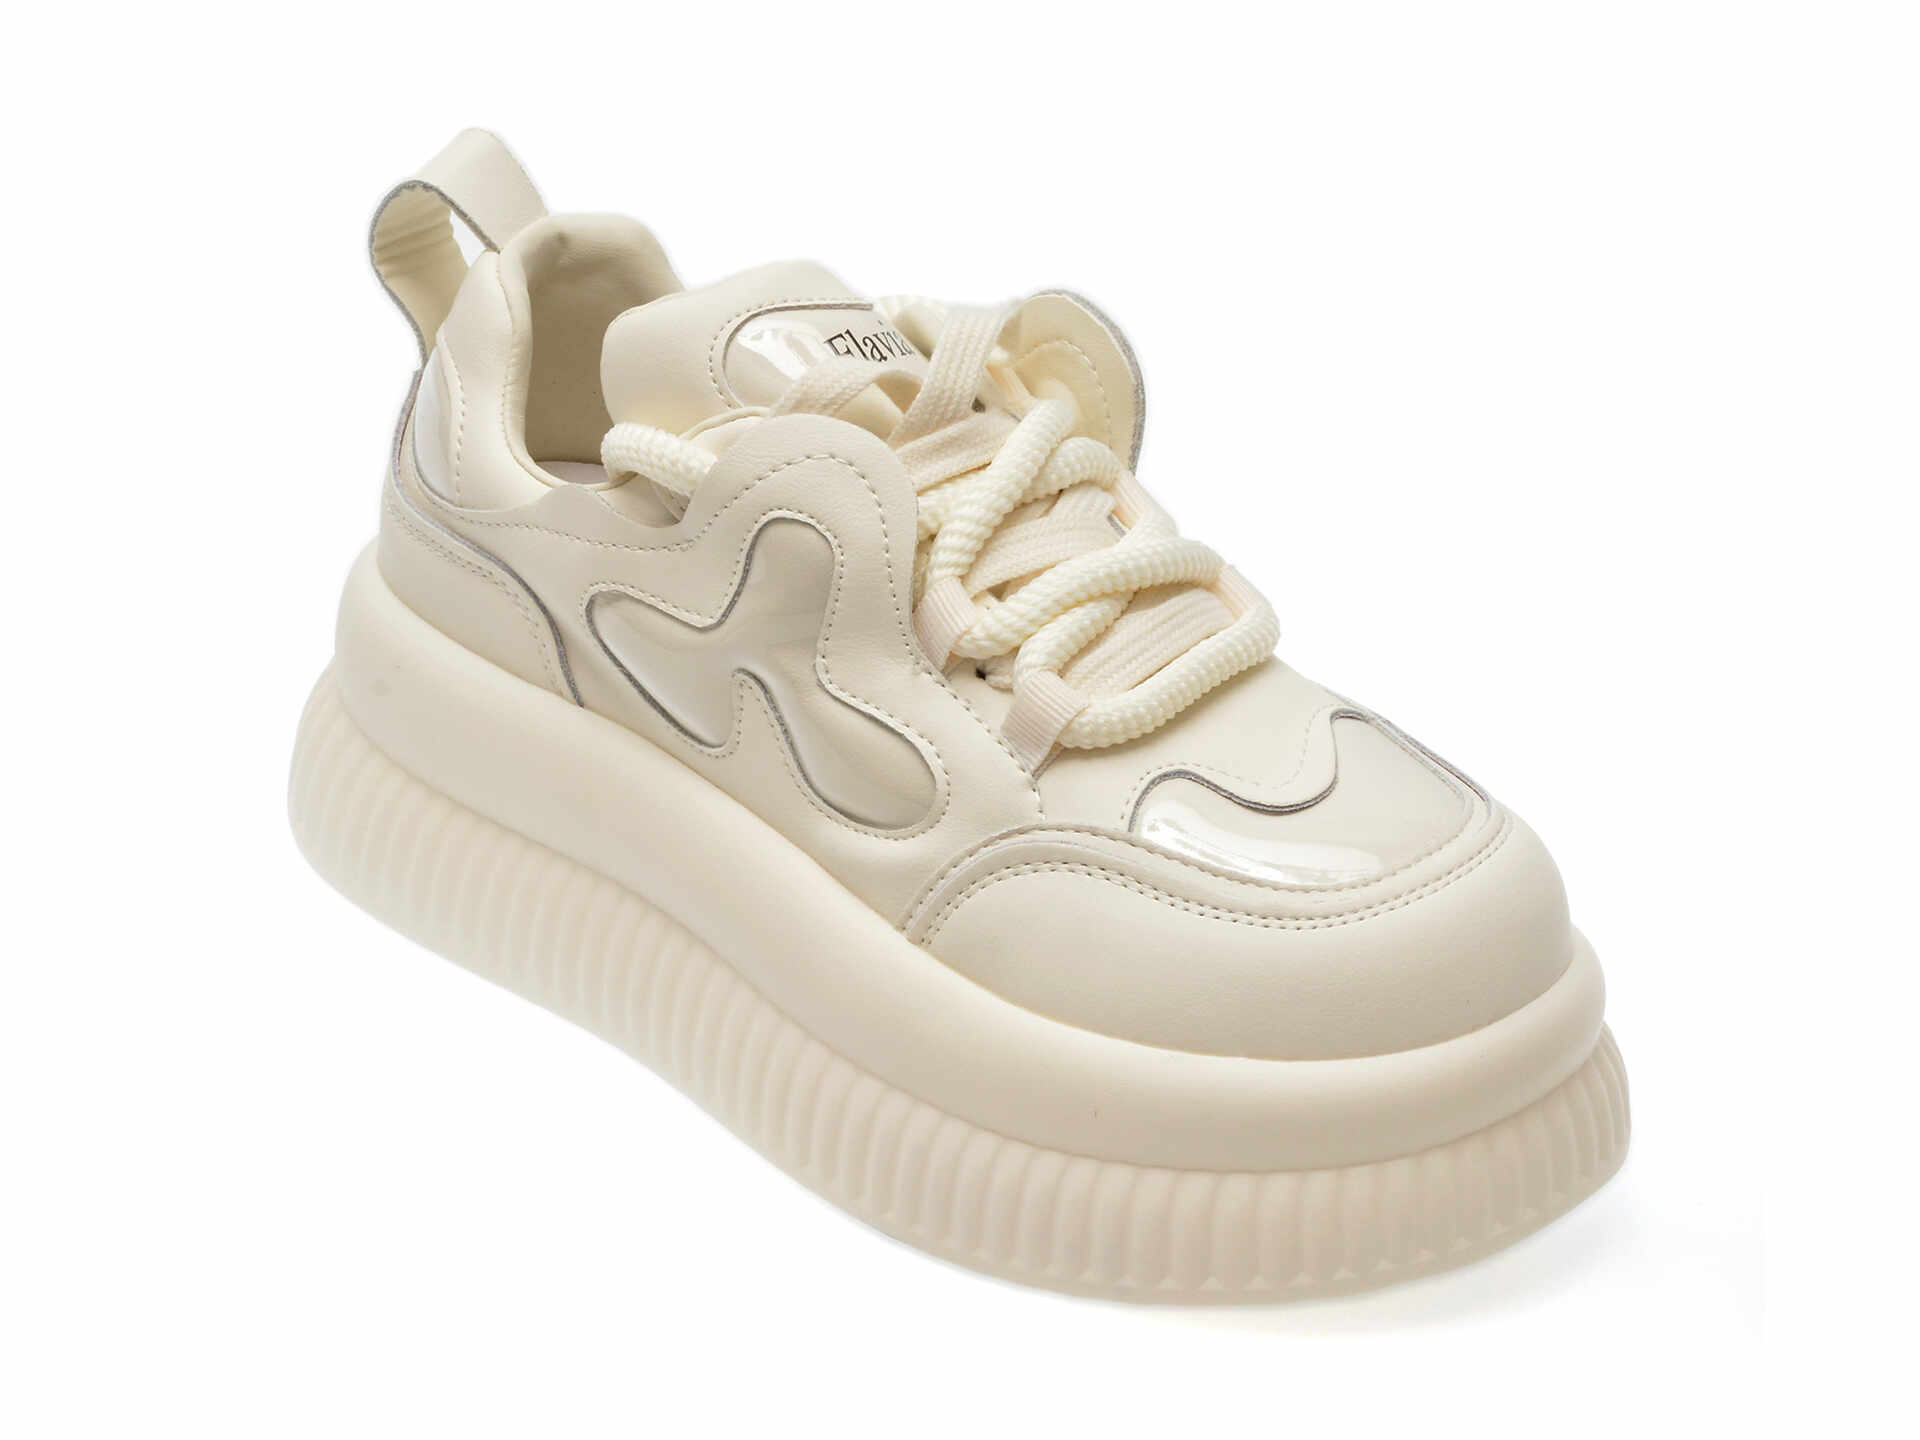 Pantofi casual FLAVIA PASSINI albi, 11910, din piele naturala